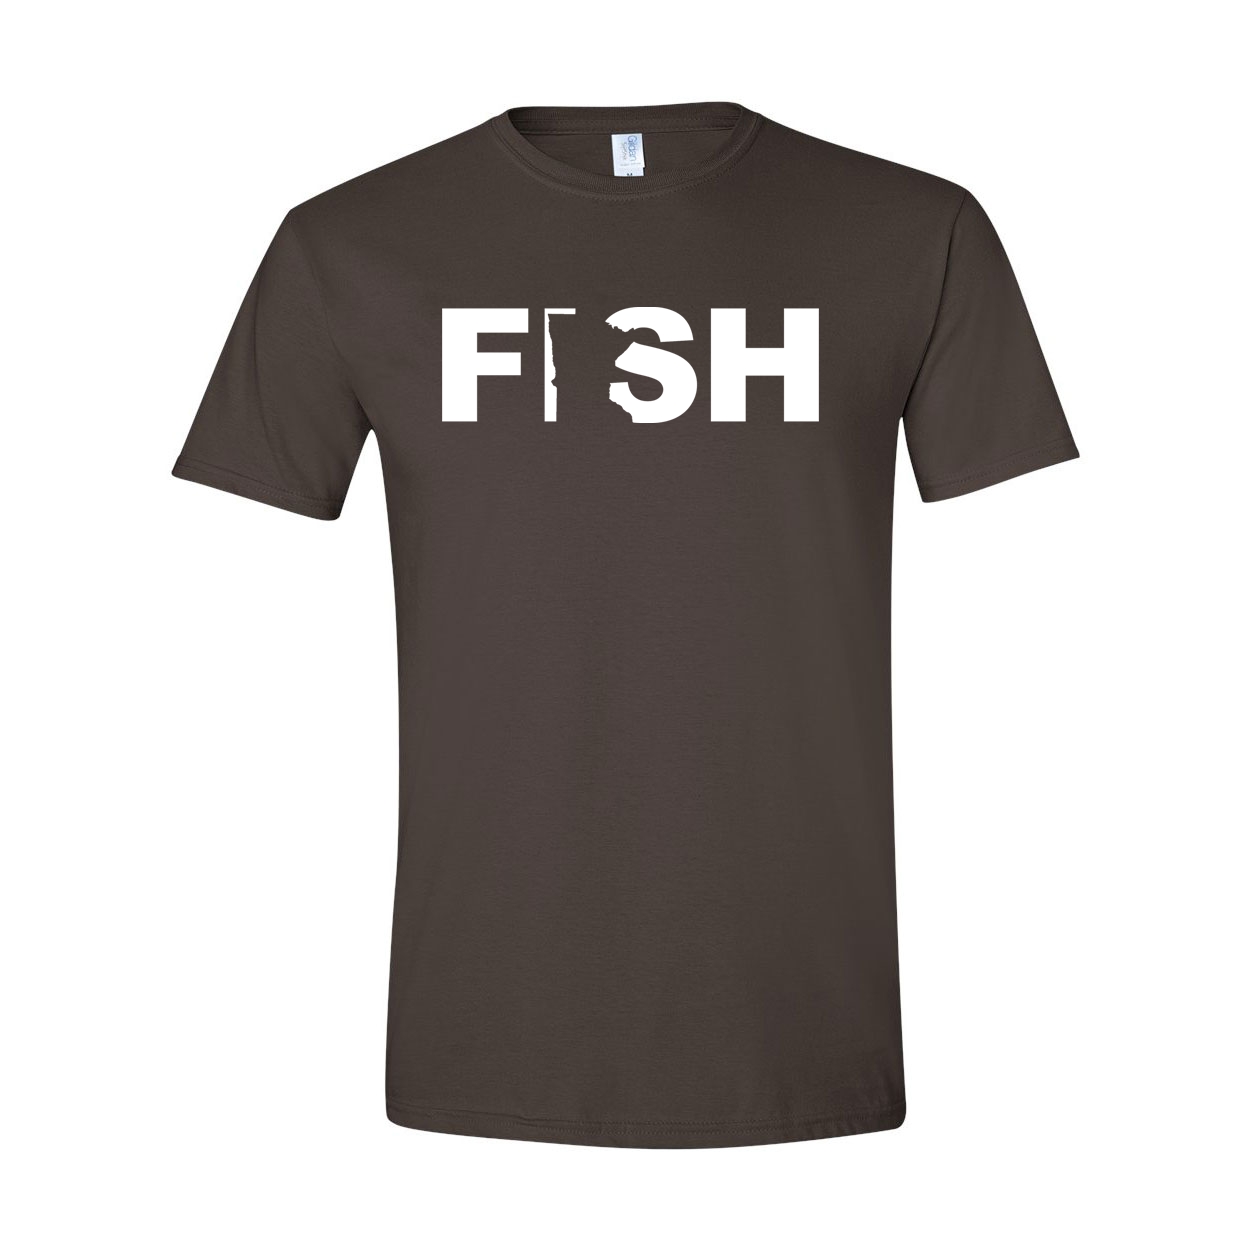 Fish Minnesota Classic T-Shirt Dark Chocolate Brown (White Logo)